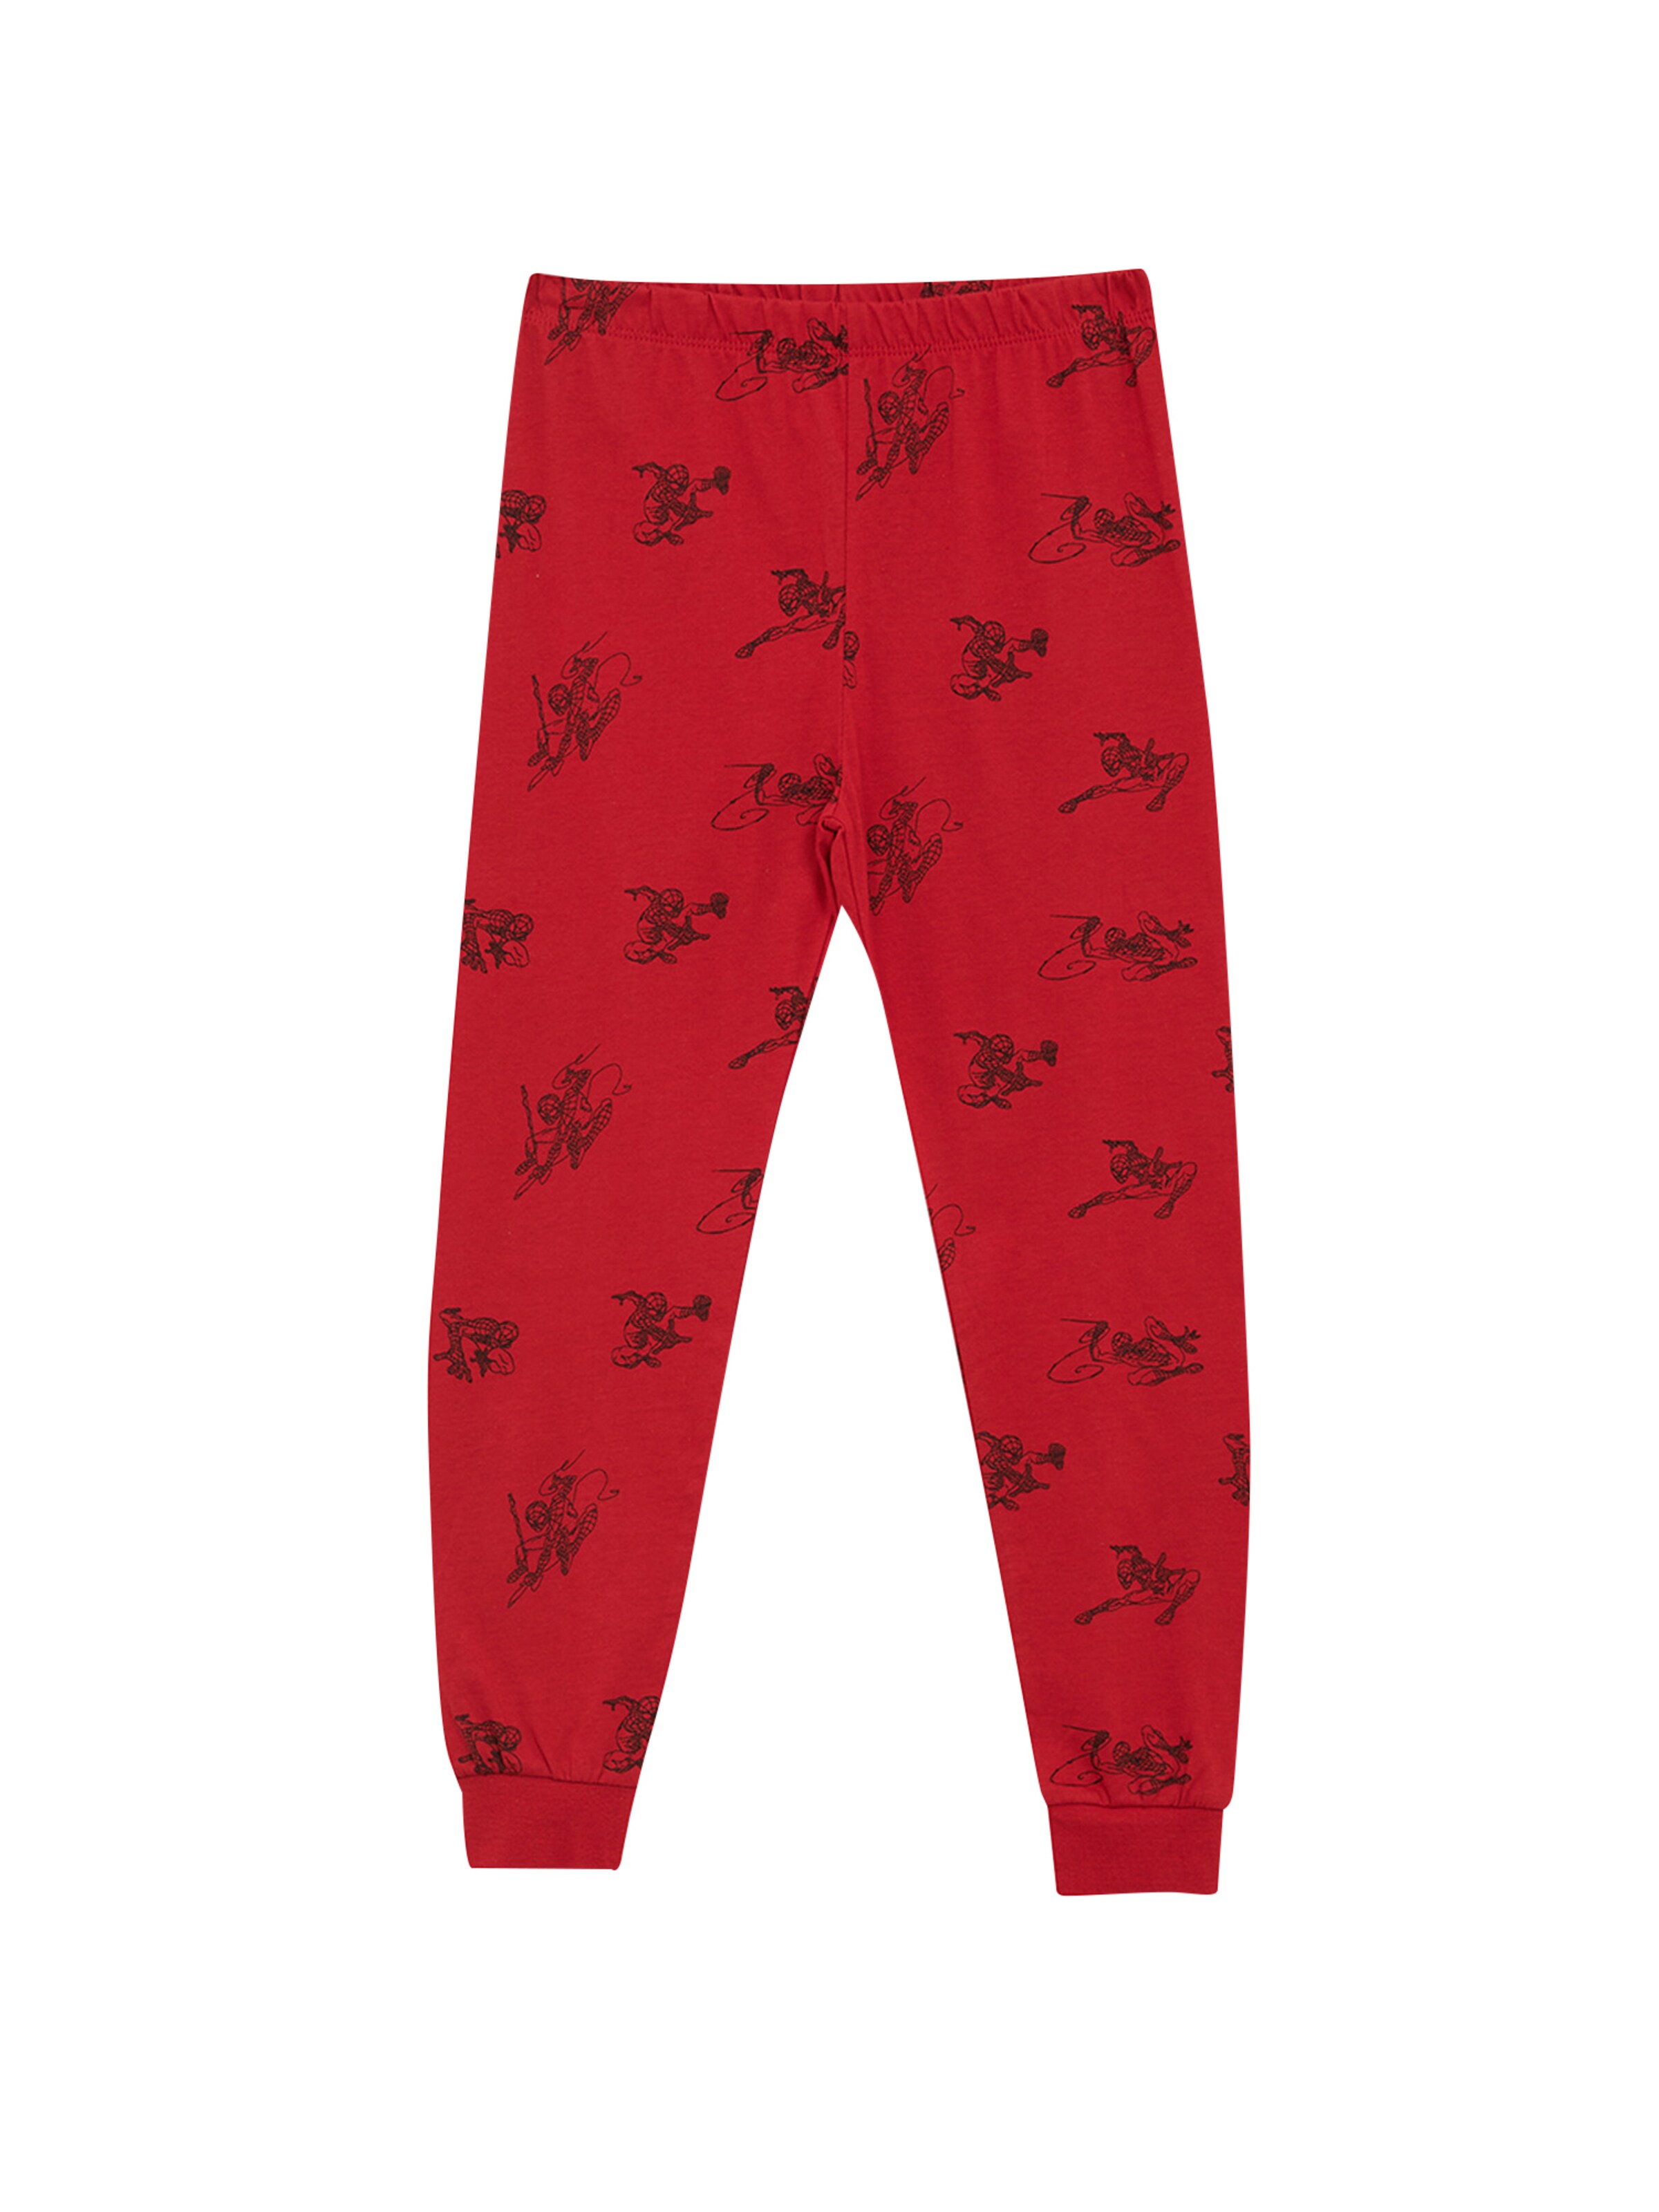 Kinder Teens (Gr. 140-176) DeFacto Schlafanzug  'Spiderman' in Graumeliert, Rot - GJ99190